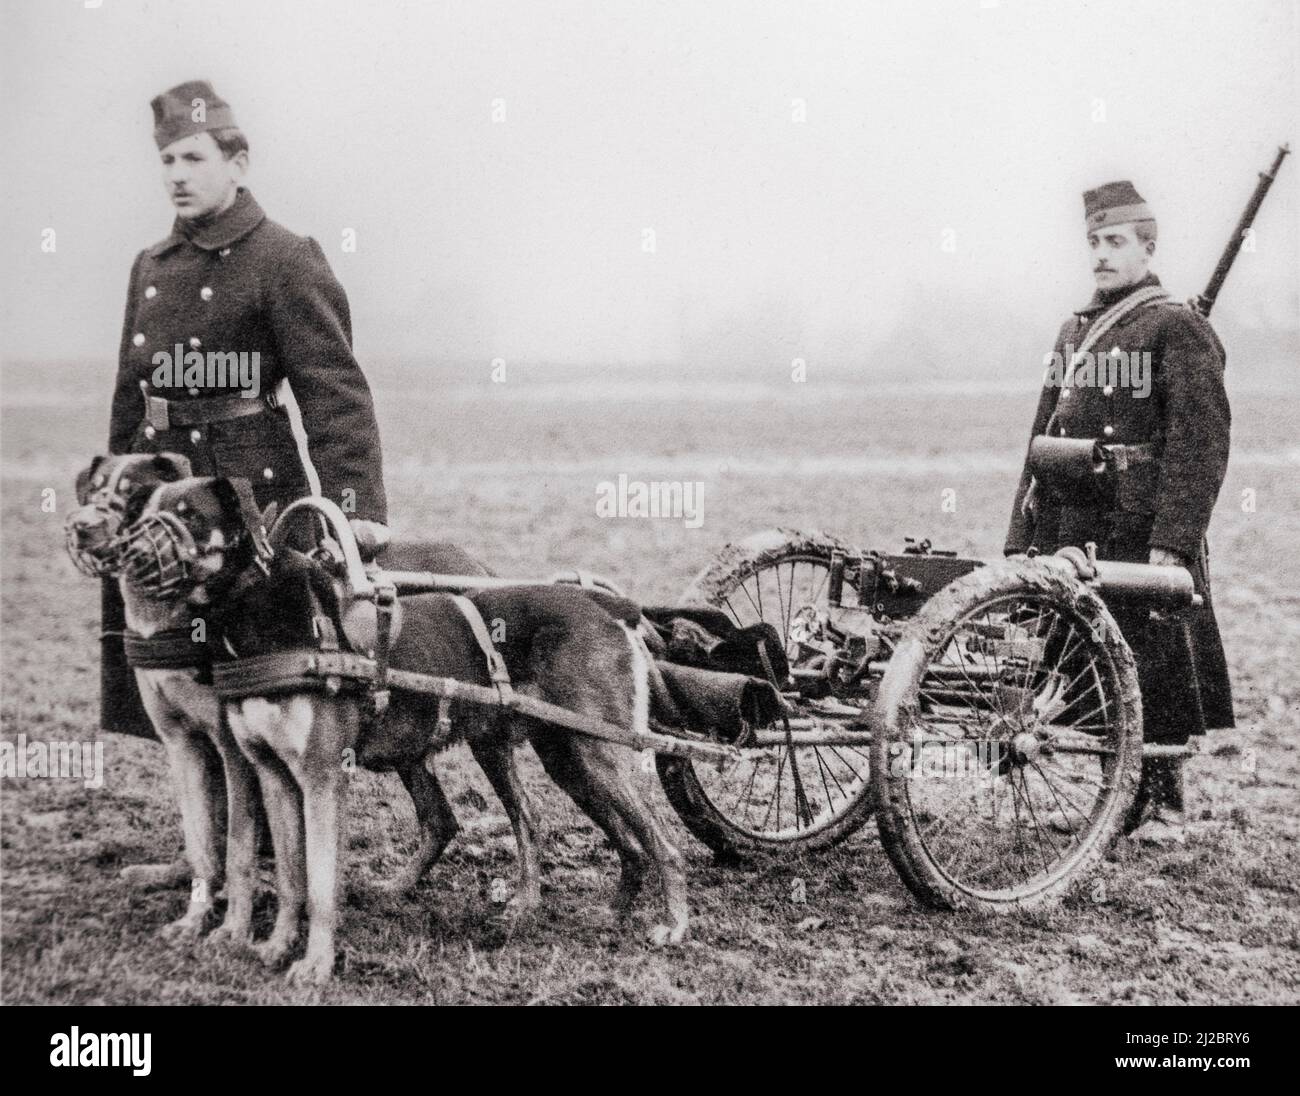 Vecchia fotografia che mostra i moschettieri belgi / fanteria leggera della prima Guerra Mondiale con mitragliatrice Maxim tirata da cani da Mastiff belgi durante la prima guerra mondiale in Belgio Foto Stock